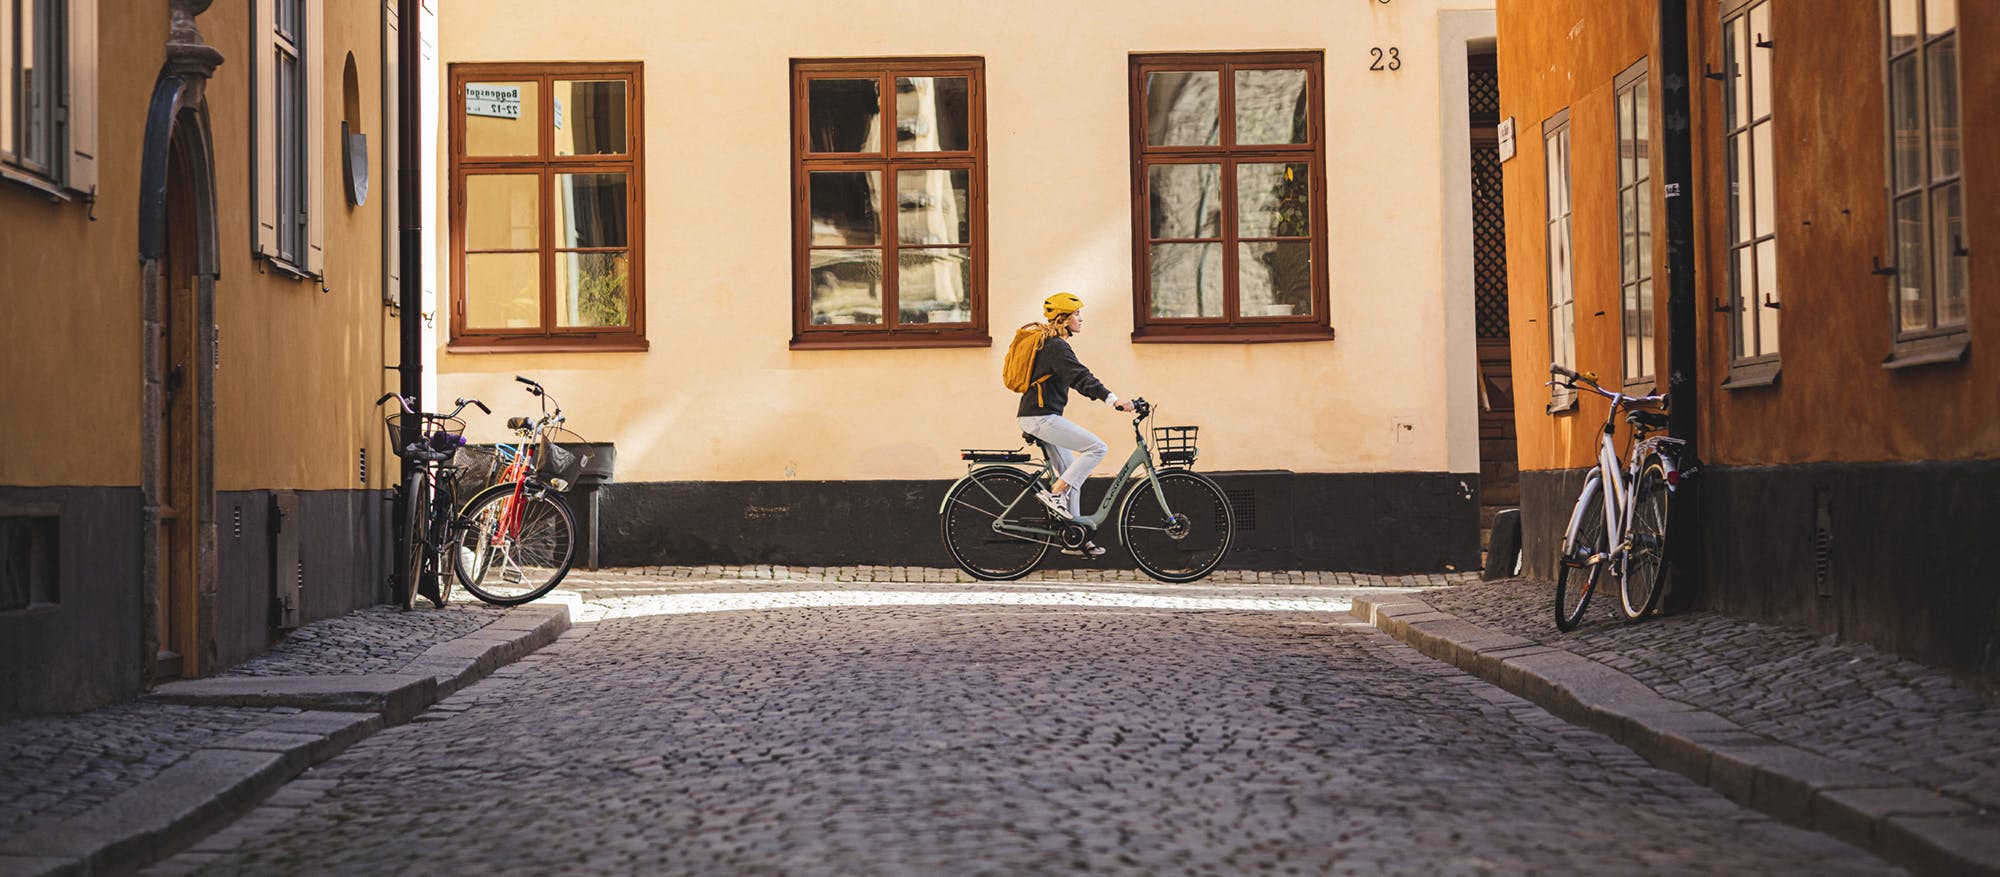 Kvinna cyklar genom pittoresk stad (Crescent)